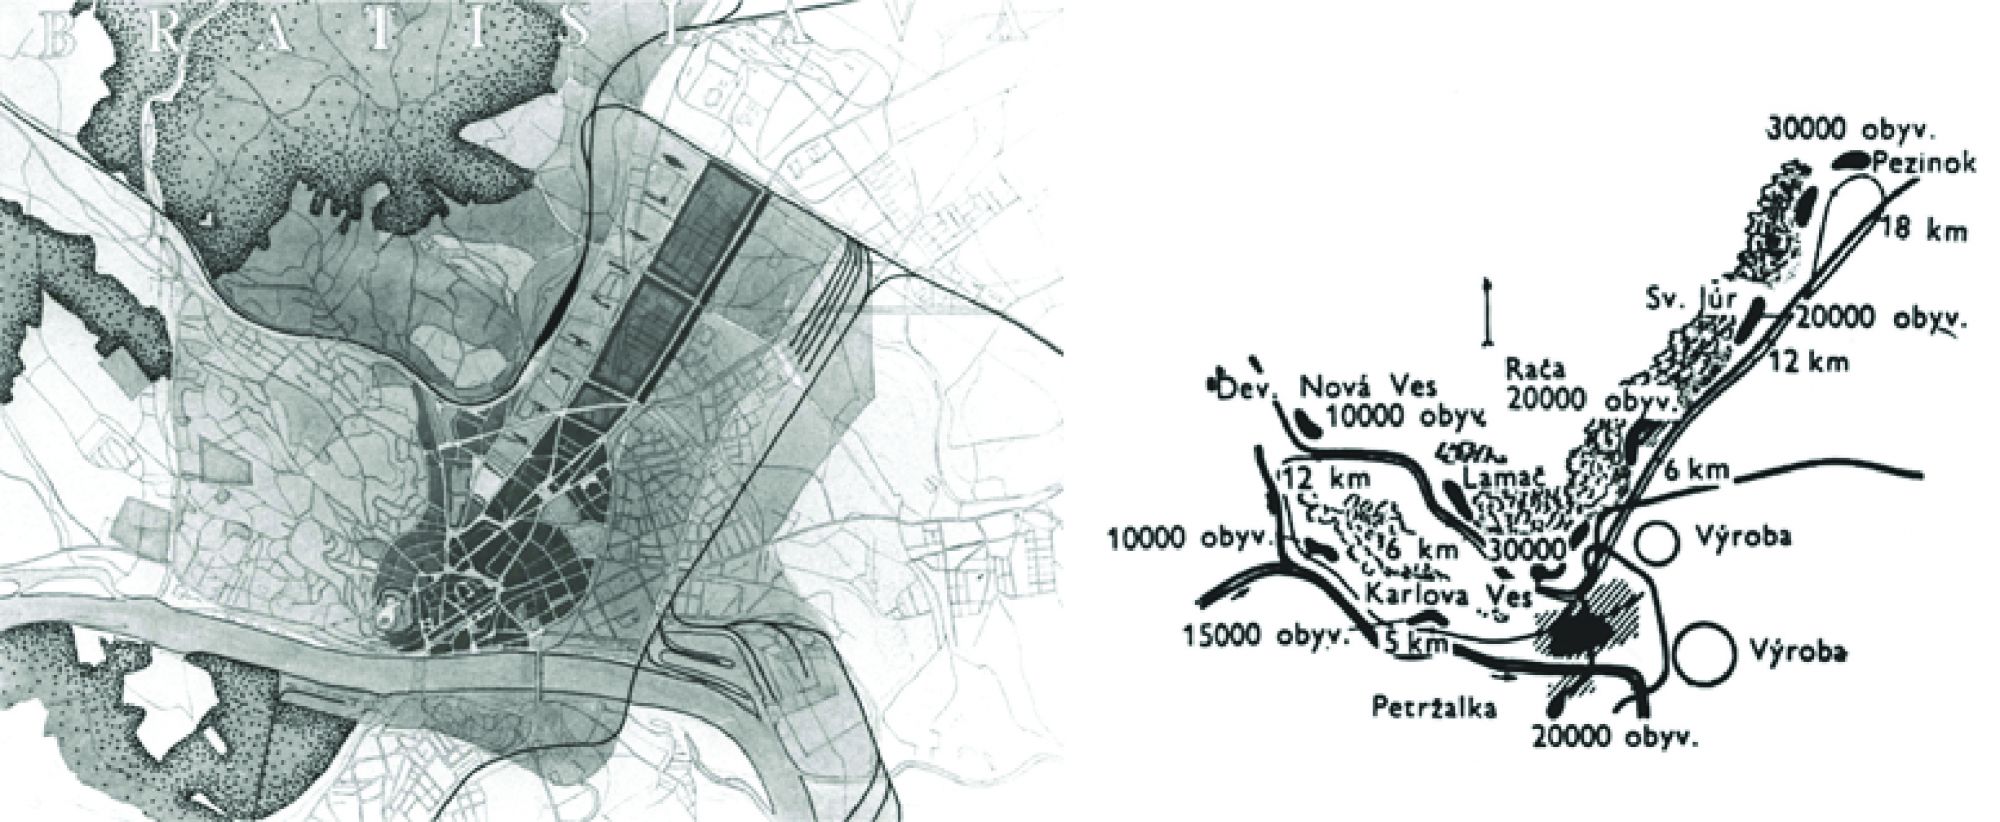 obr.  9 - Vľavo štúdia na smerný územný plán Bratislavy,  vpravo rozloženie nových sídlisk s počtom obyvateľov (Hruška, 1971)